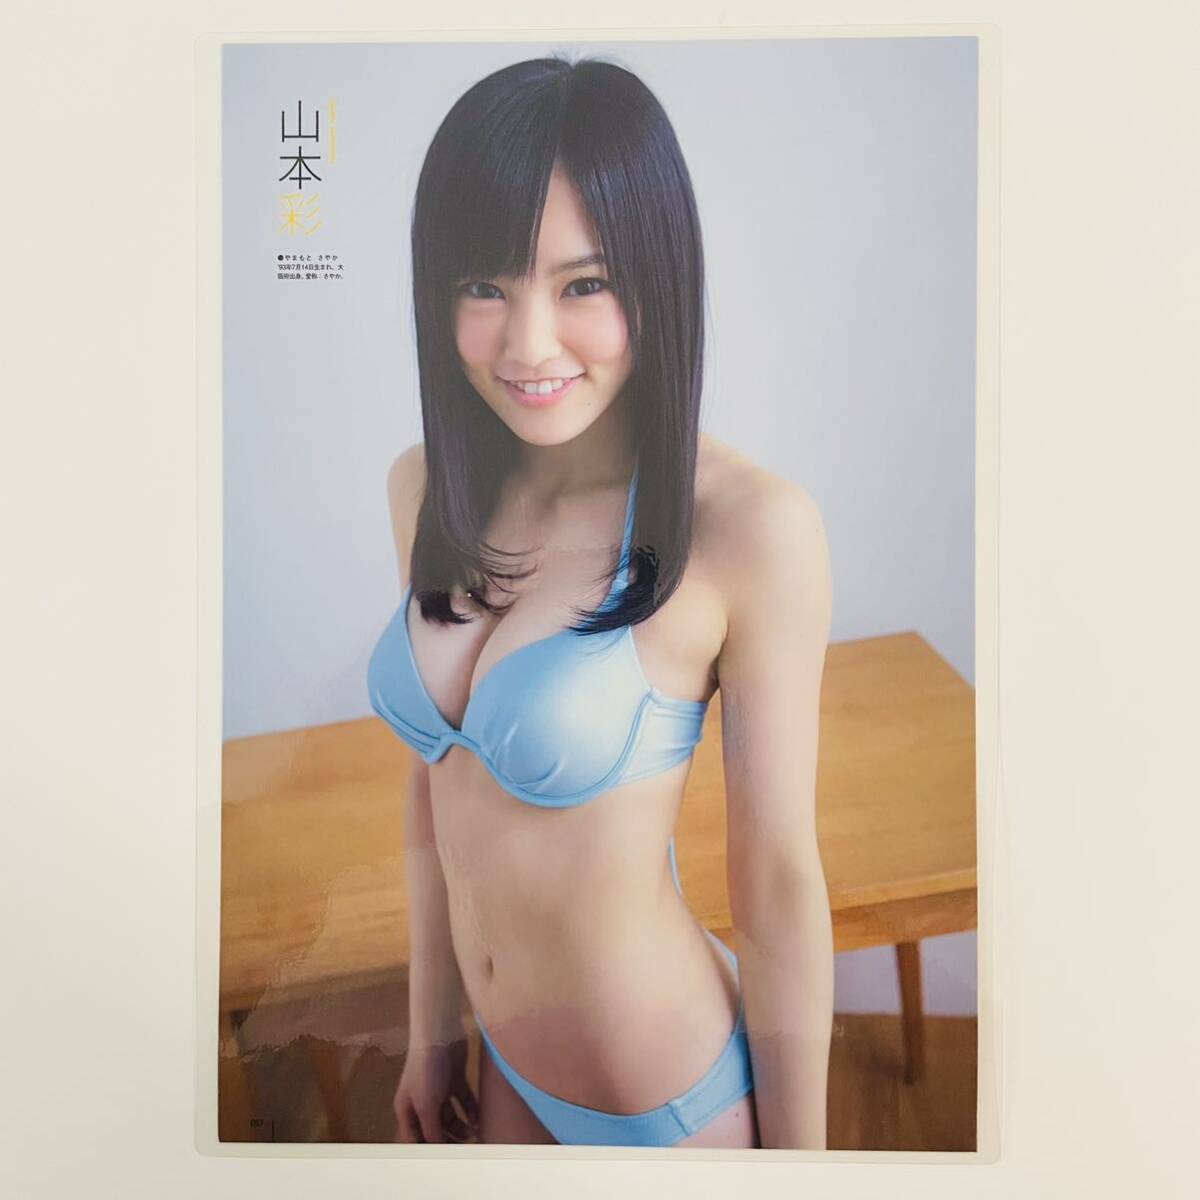 [ Yamamoto Sayaka ][ высокое качество ламинирование обработка ]100μ A4 размер размещение журнал неизвестен вырезки женщина super звезда gravure 